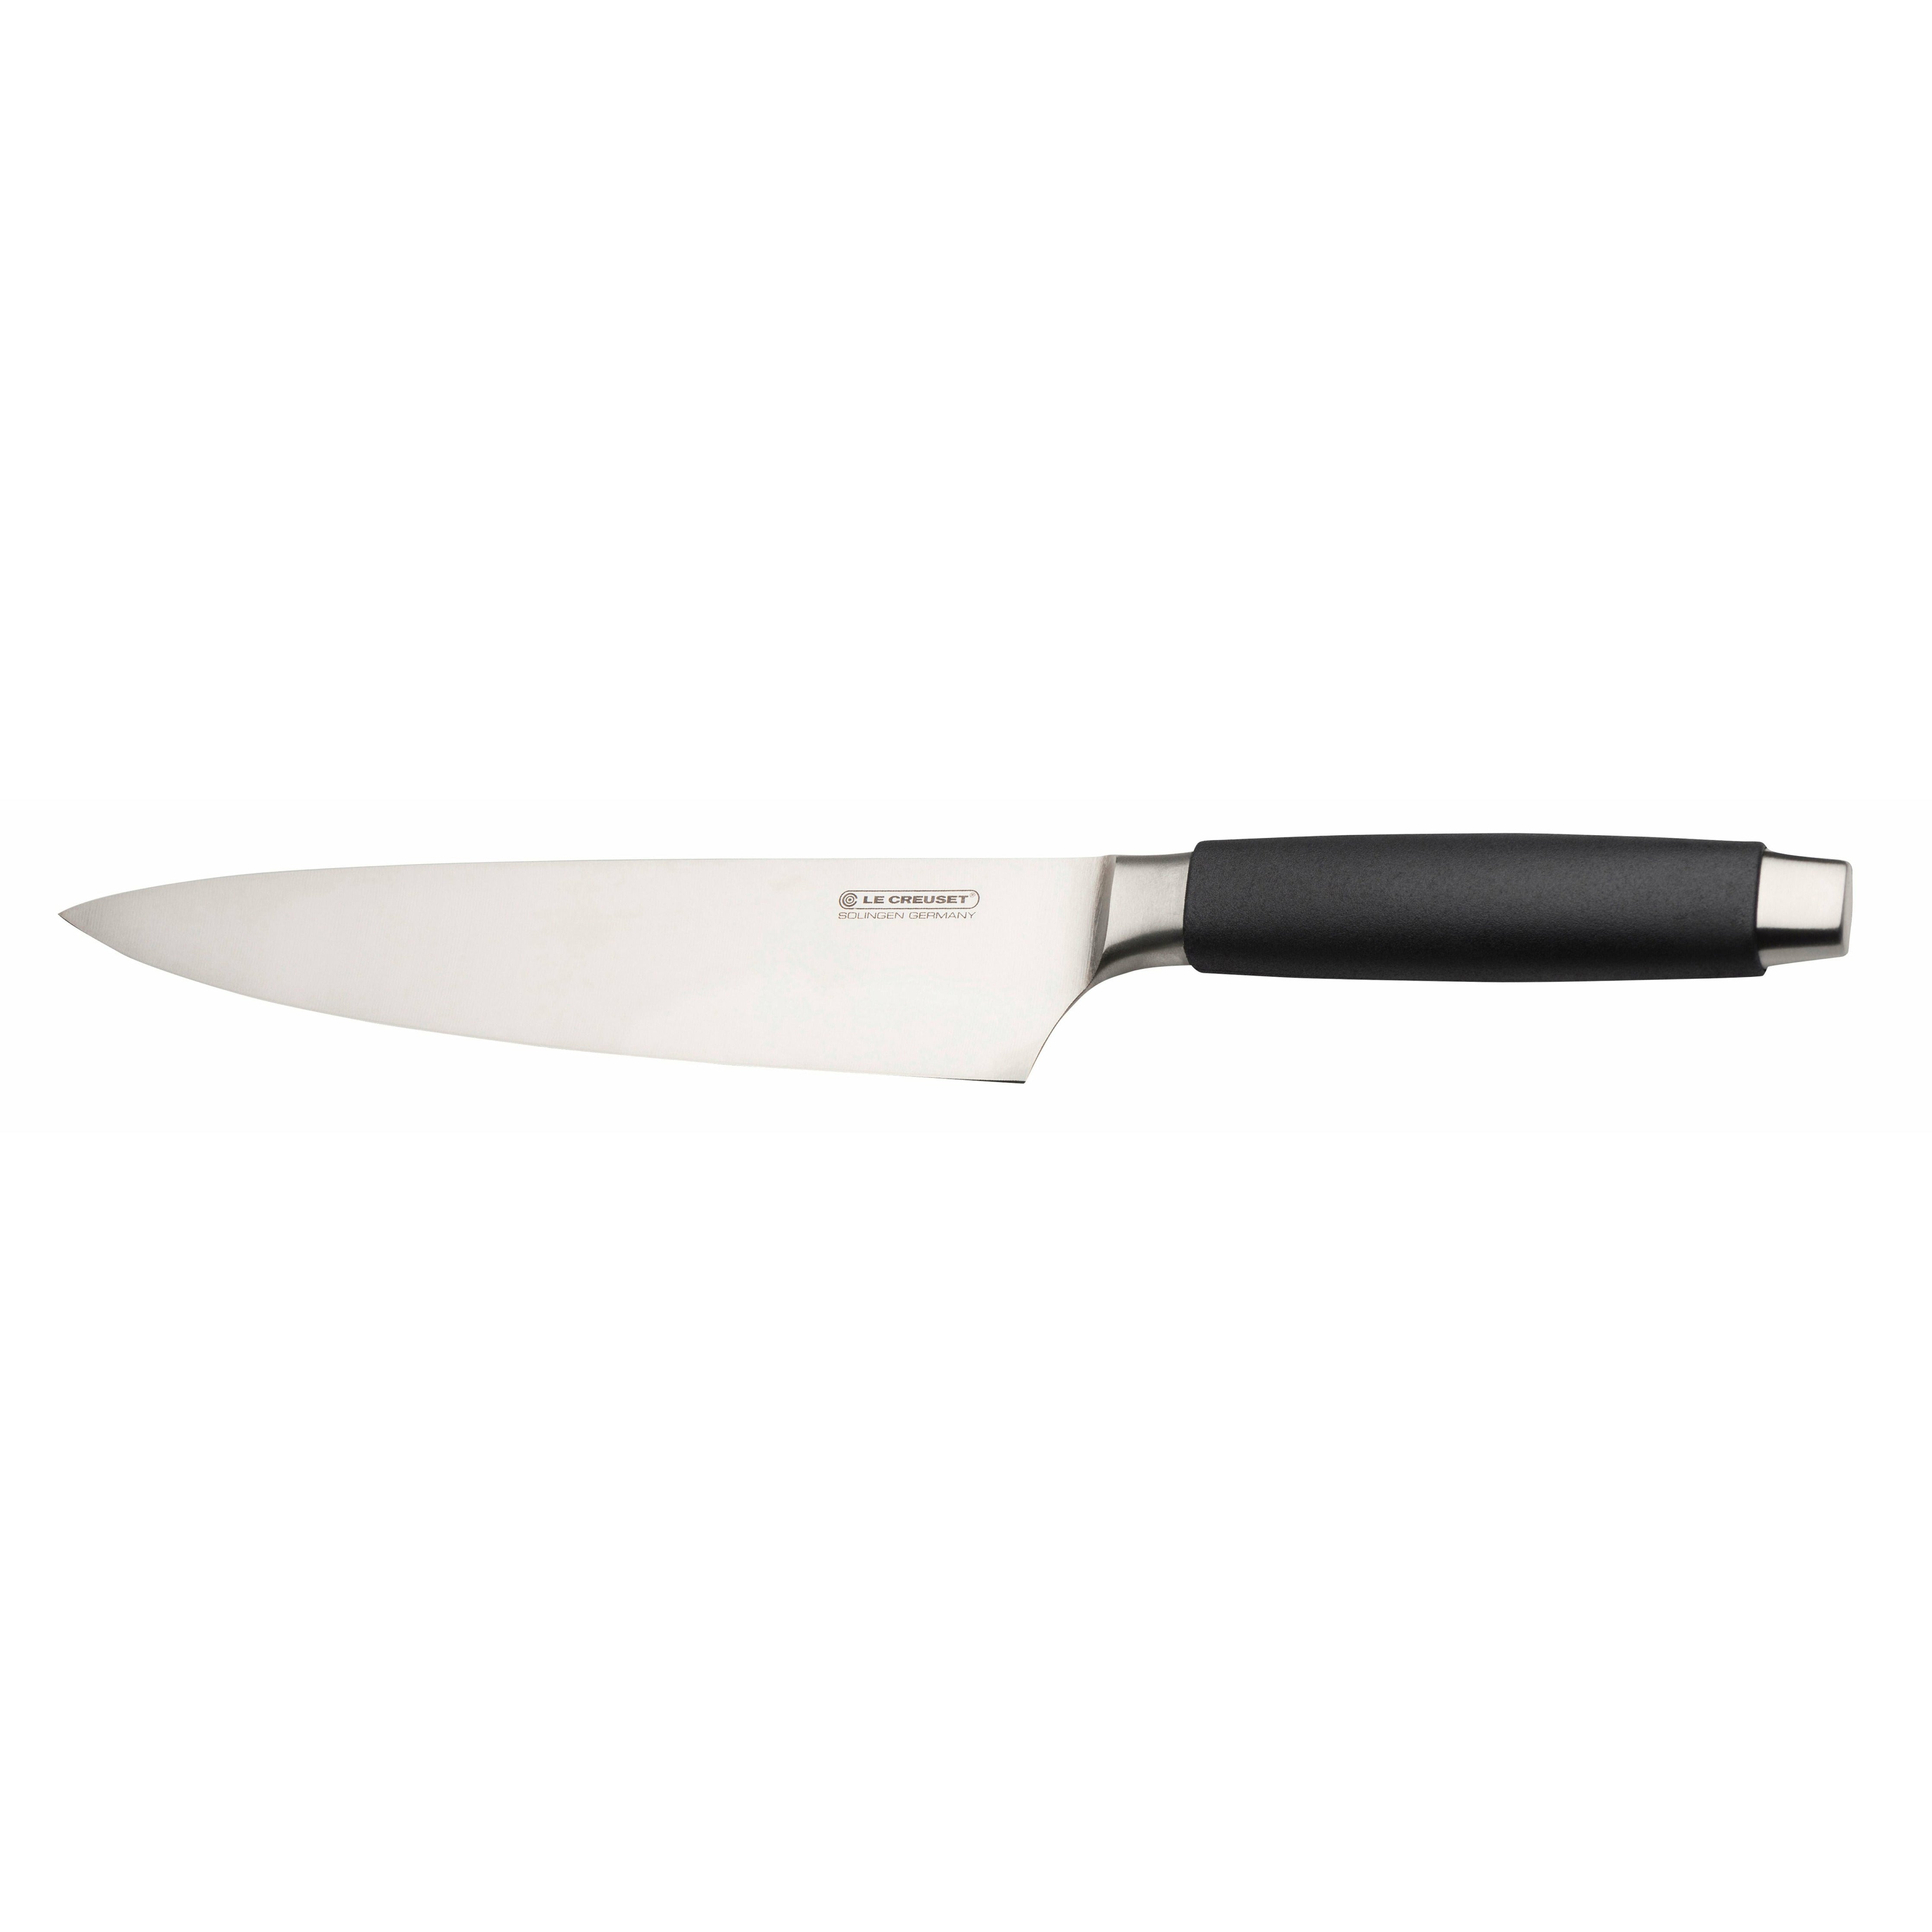 Le Creuset Standard du couteau du chef avec poignée noire, 20 cm